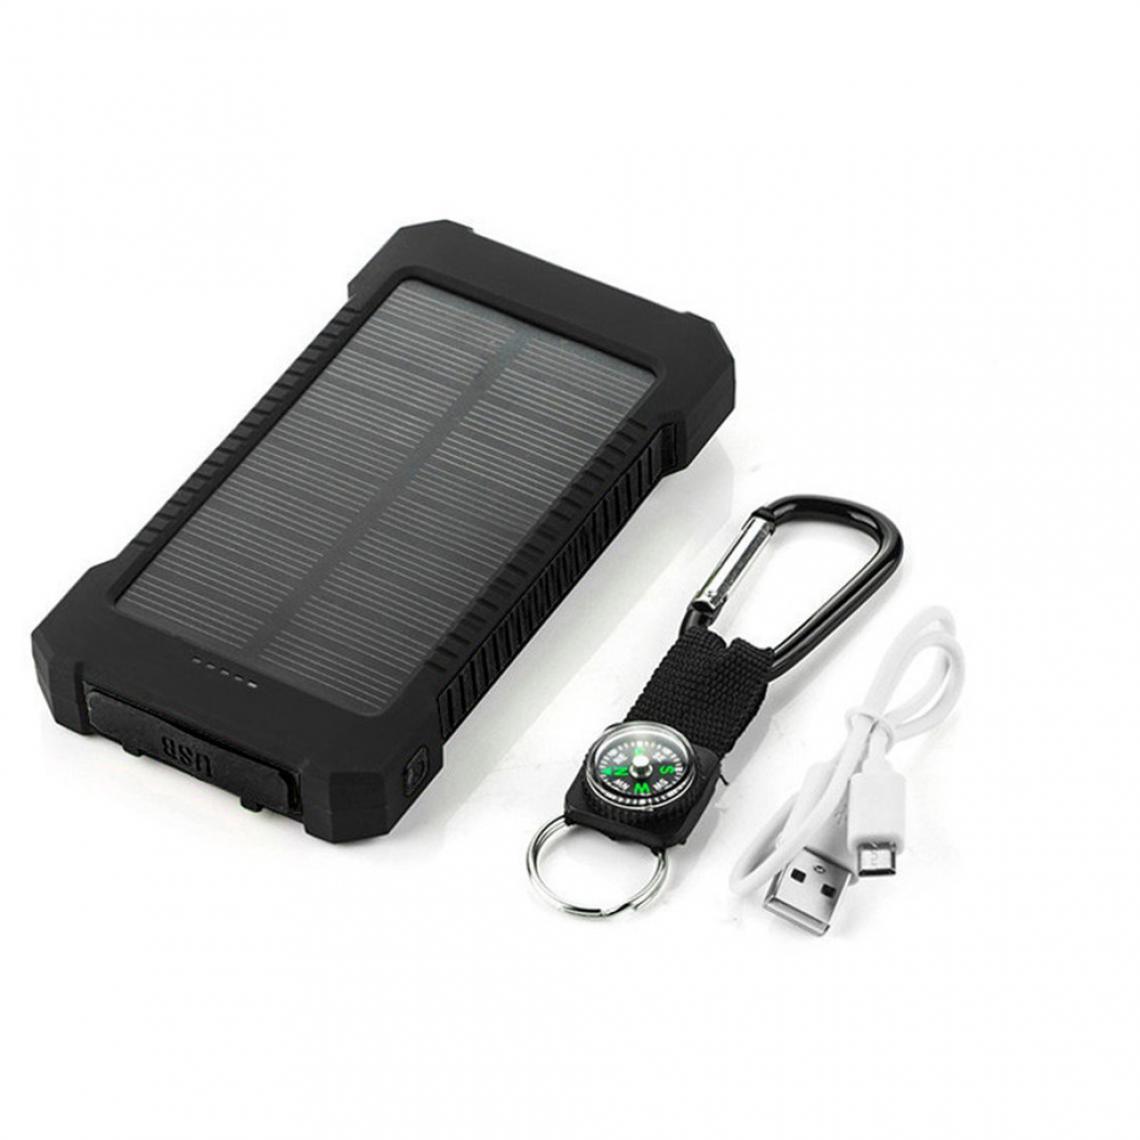 Shot - Batterie Externe Solaire pour XIAOMI Redmi S2 Smartphone Tablette Chargeur Power Bank 4000mAh 2 Port USB - Chargeur secteur téléphone